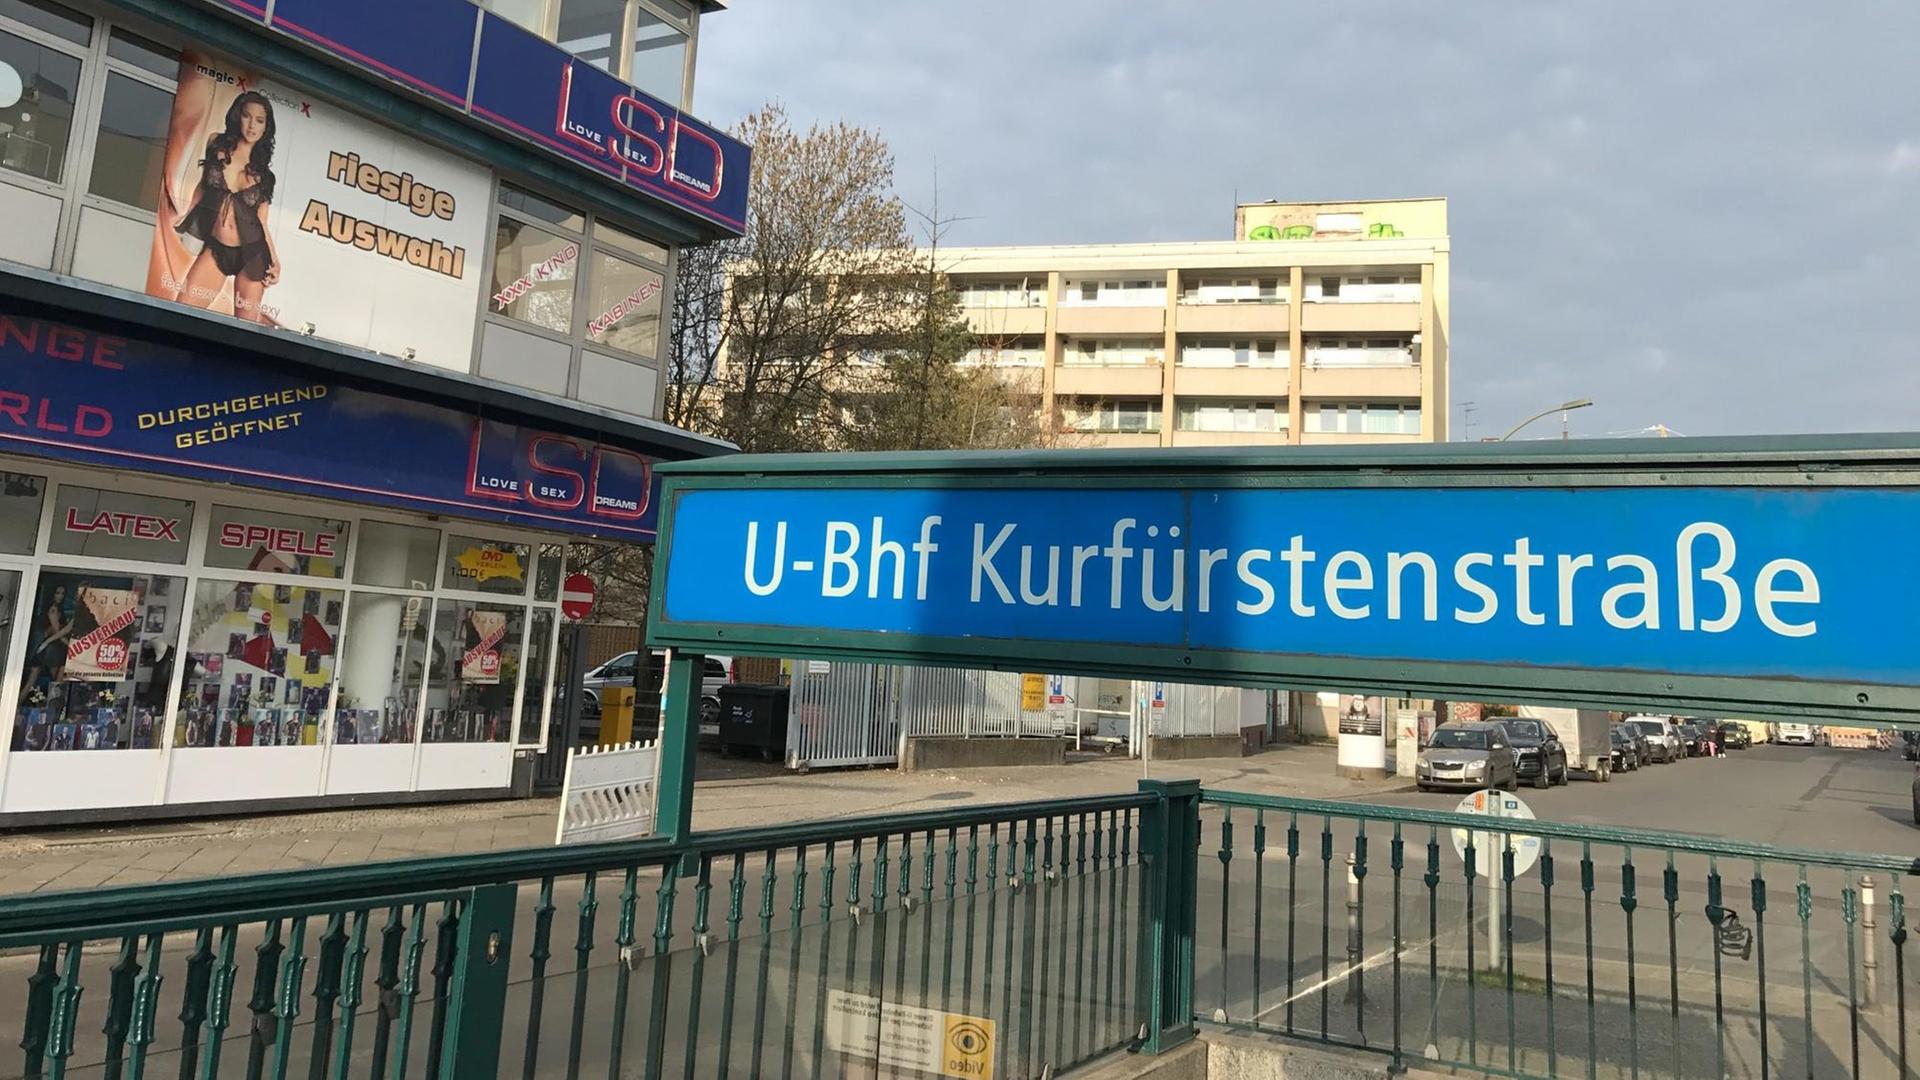 Berlin prostitution kurfürstenstraße What to